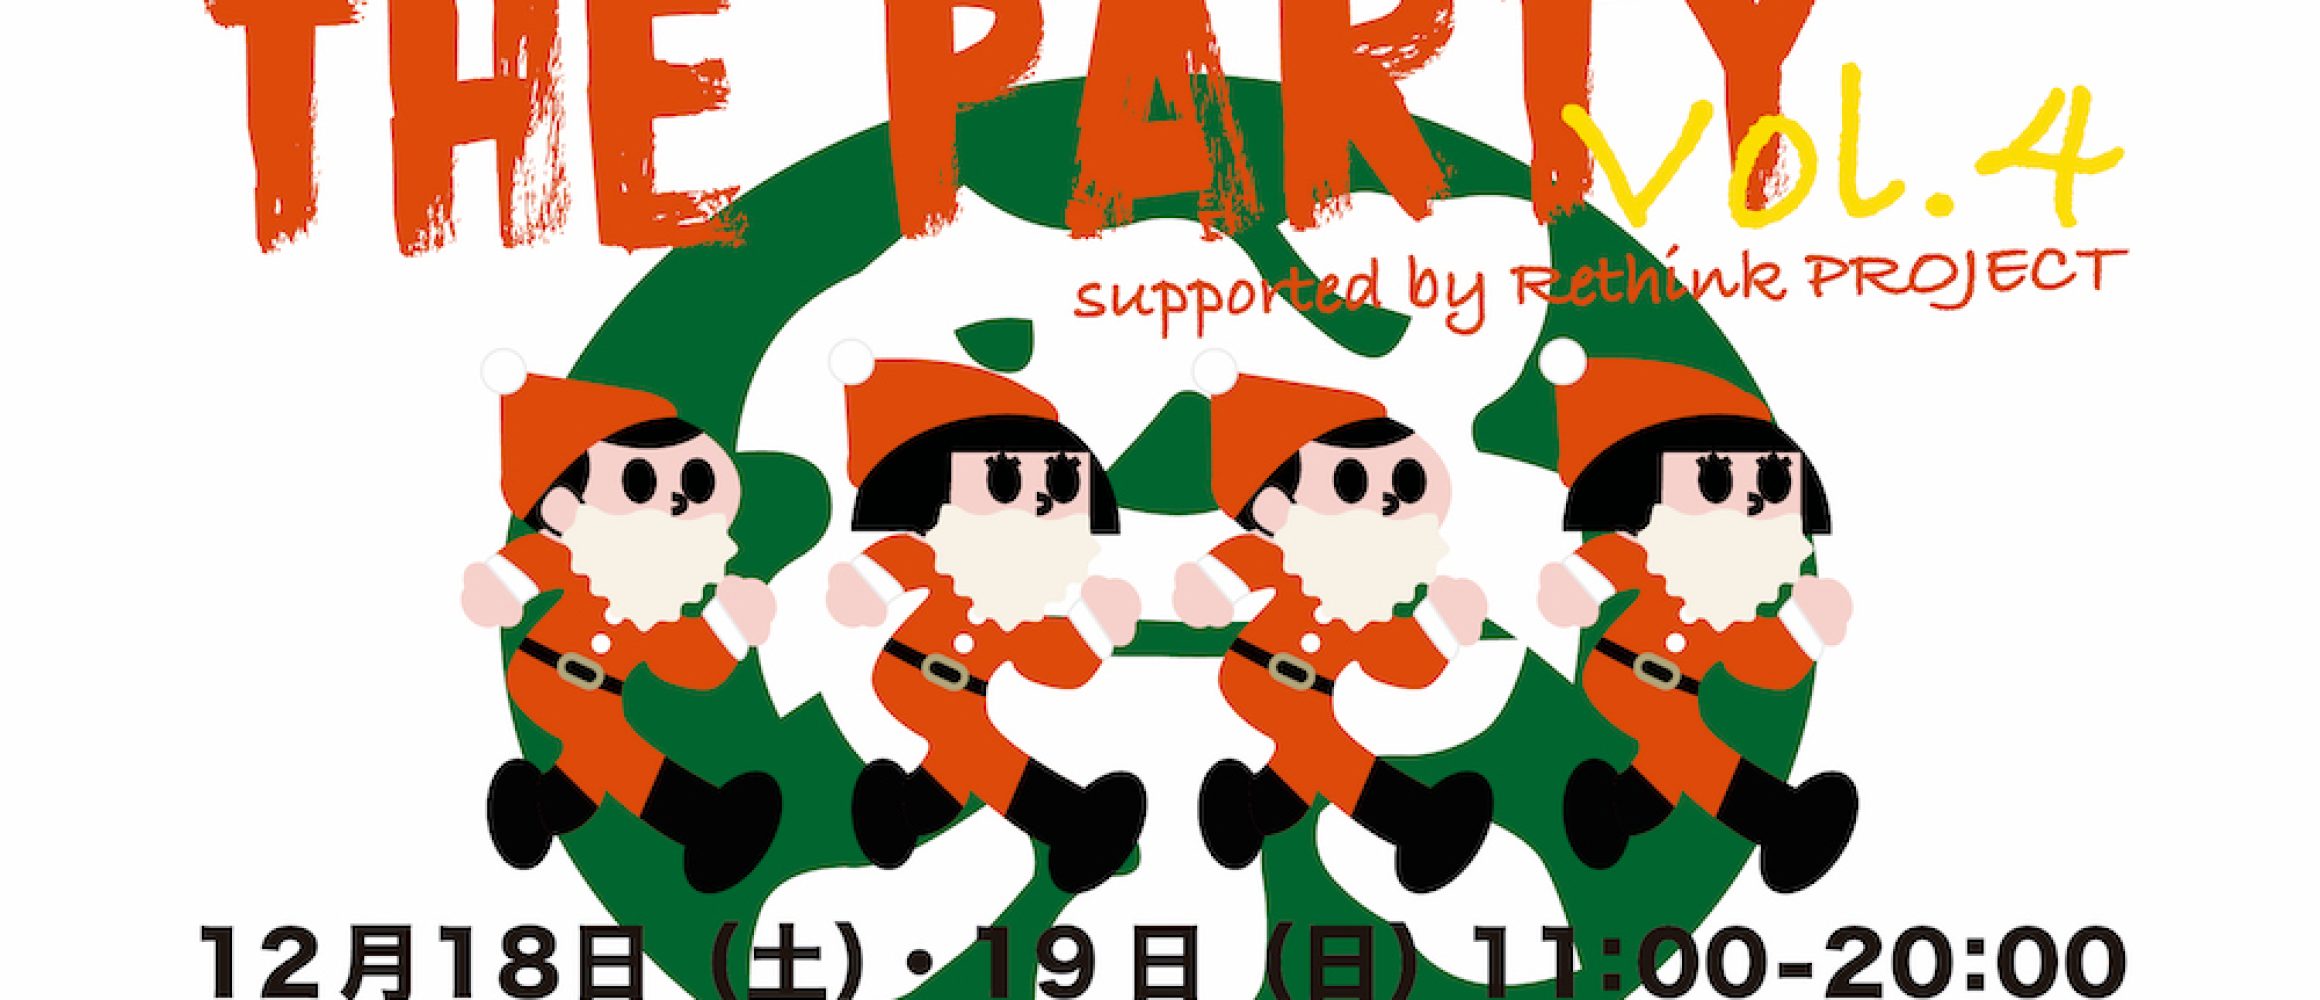 話題のブランドが勢揃いするイベント「THE PARTY vol.4」が渋谷 